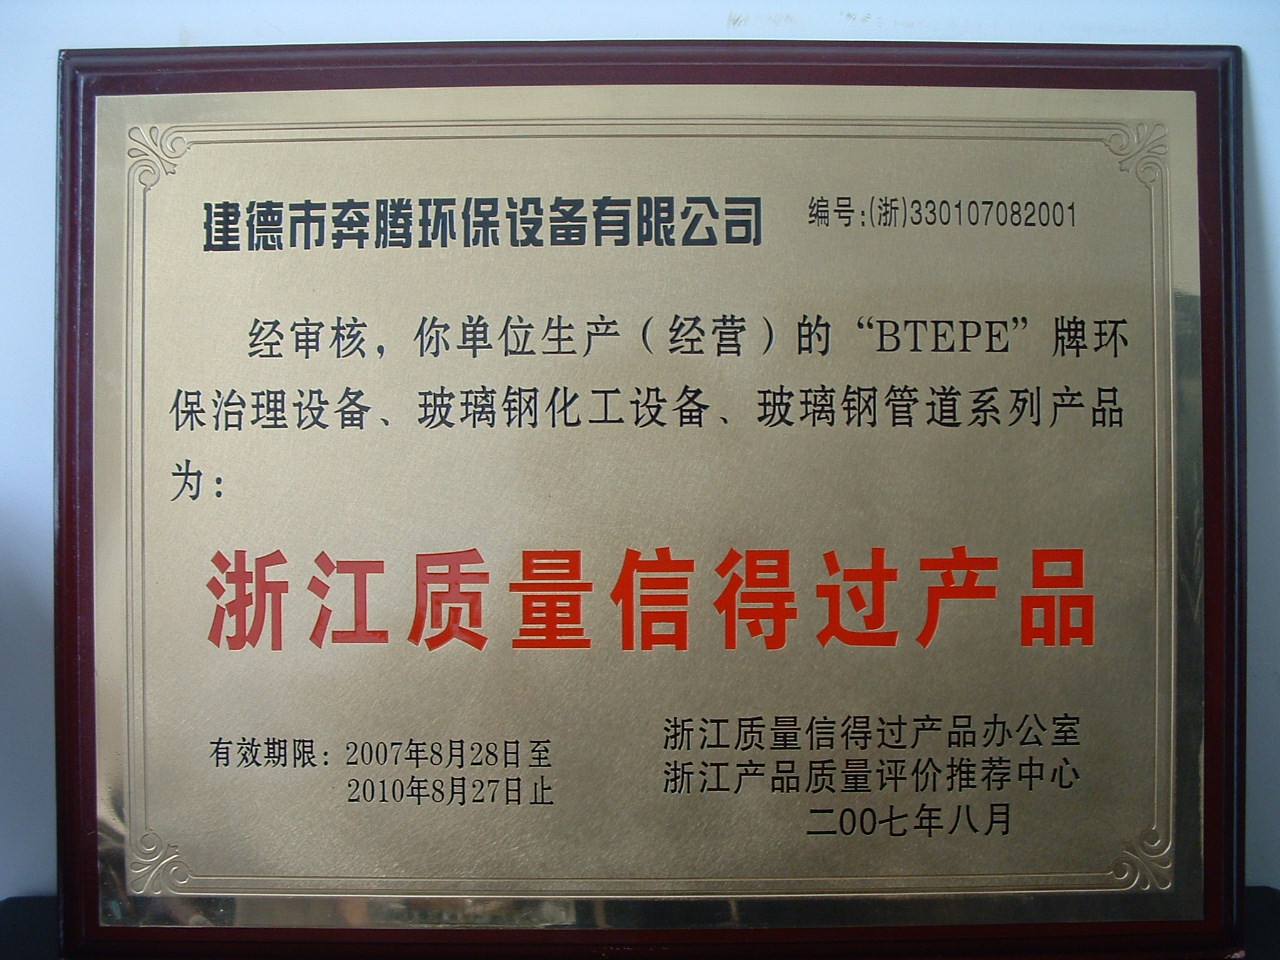 Zhejiang quality product certificate